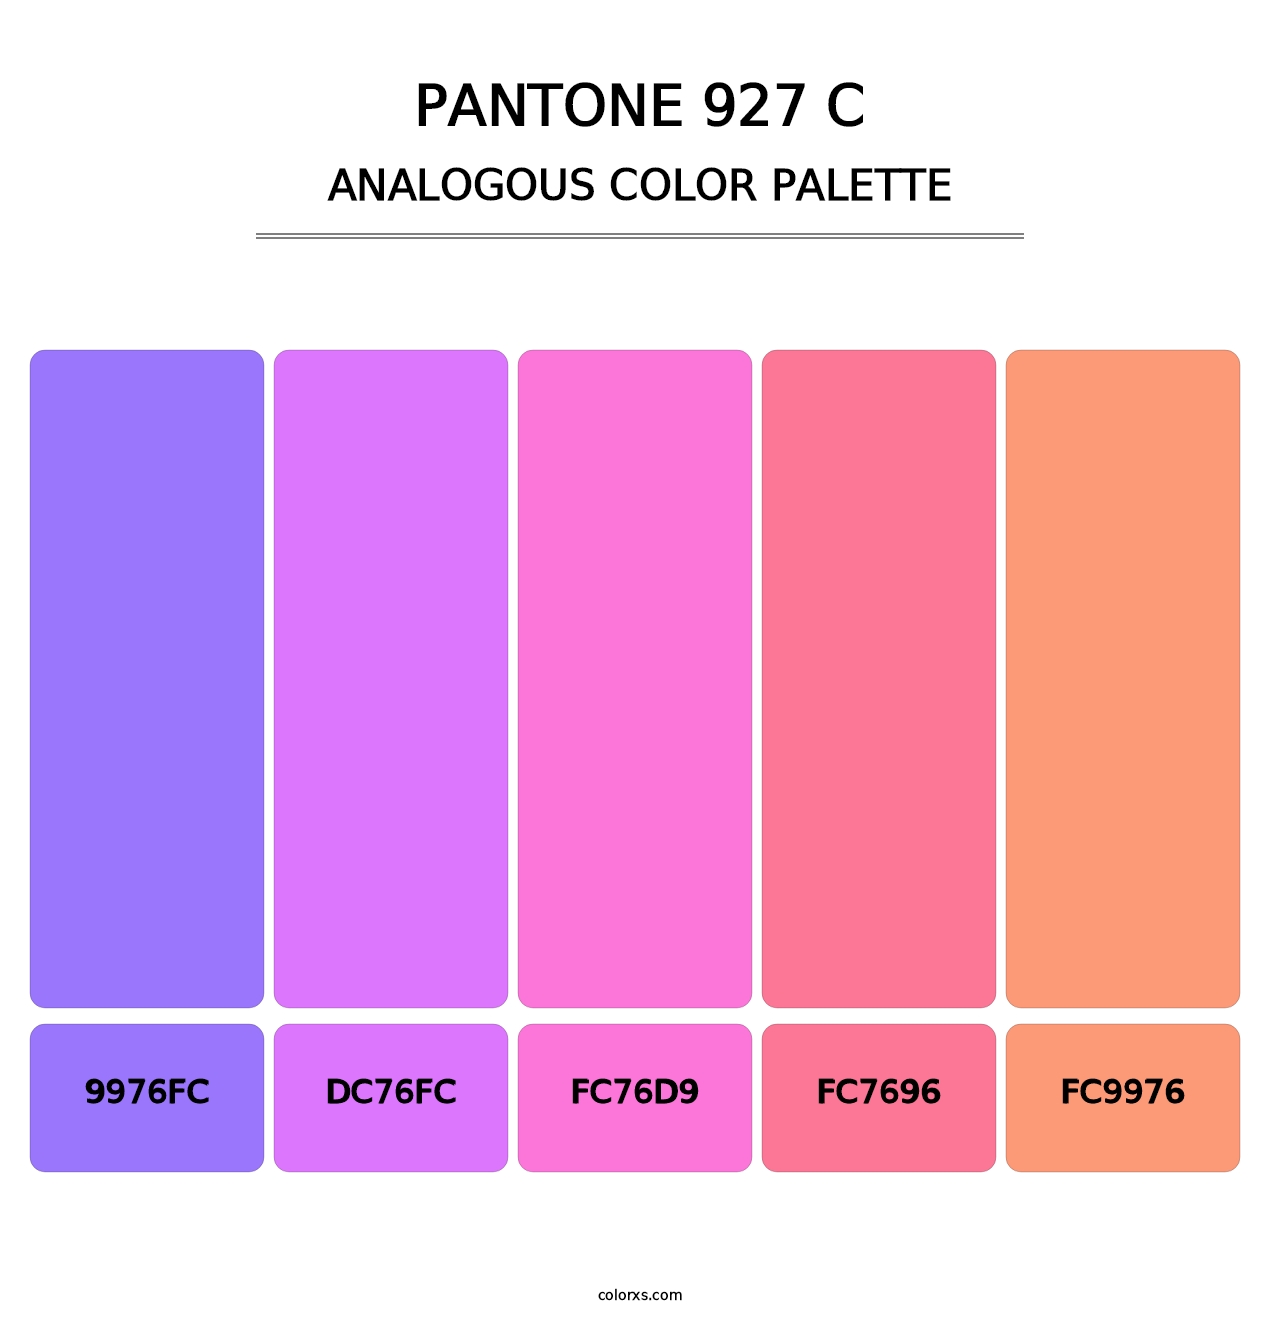 PANTONE 927 C - Analogous Color Palette